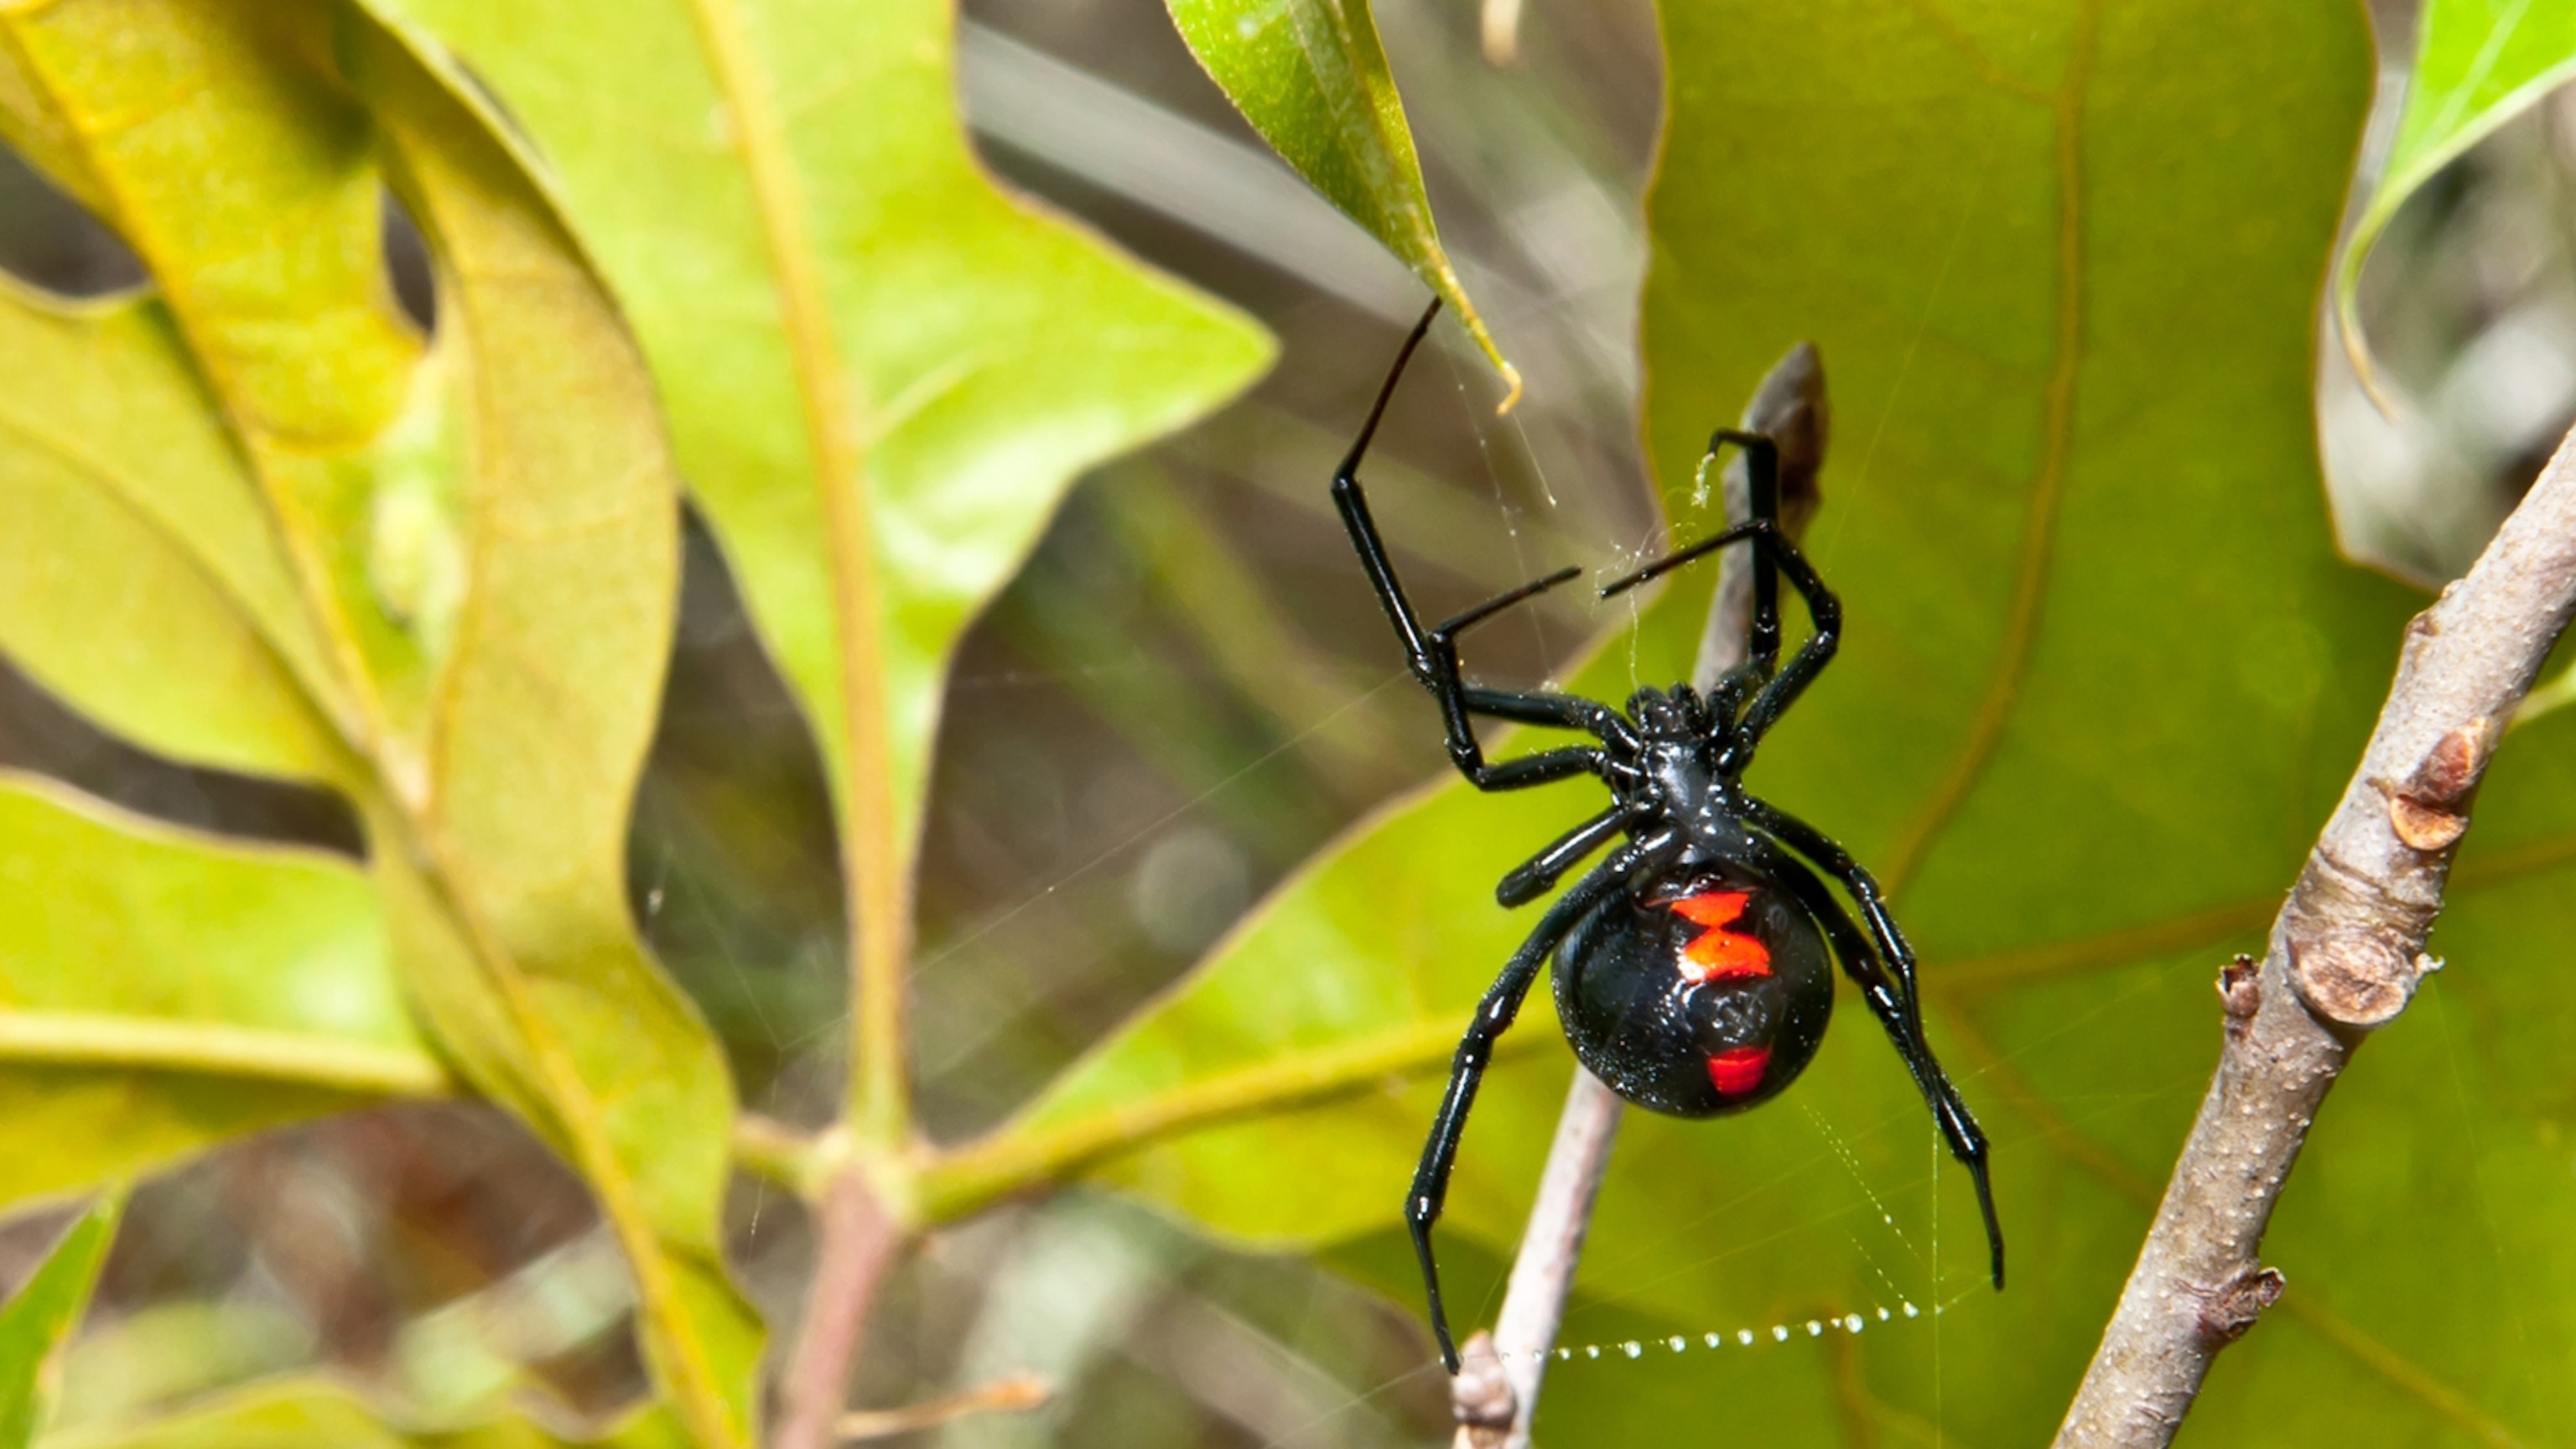 Black widow marvels, Unique spider species, Stunning wallpaper adventure, Nature's beauty, 3080x1730 HD Desktop